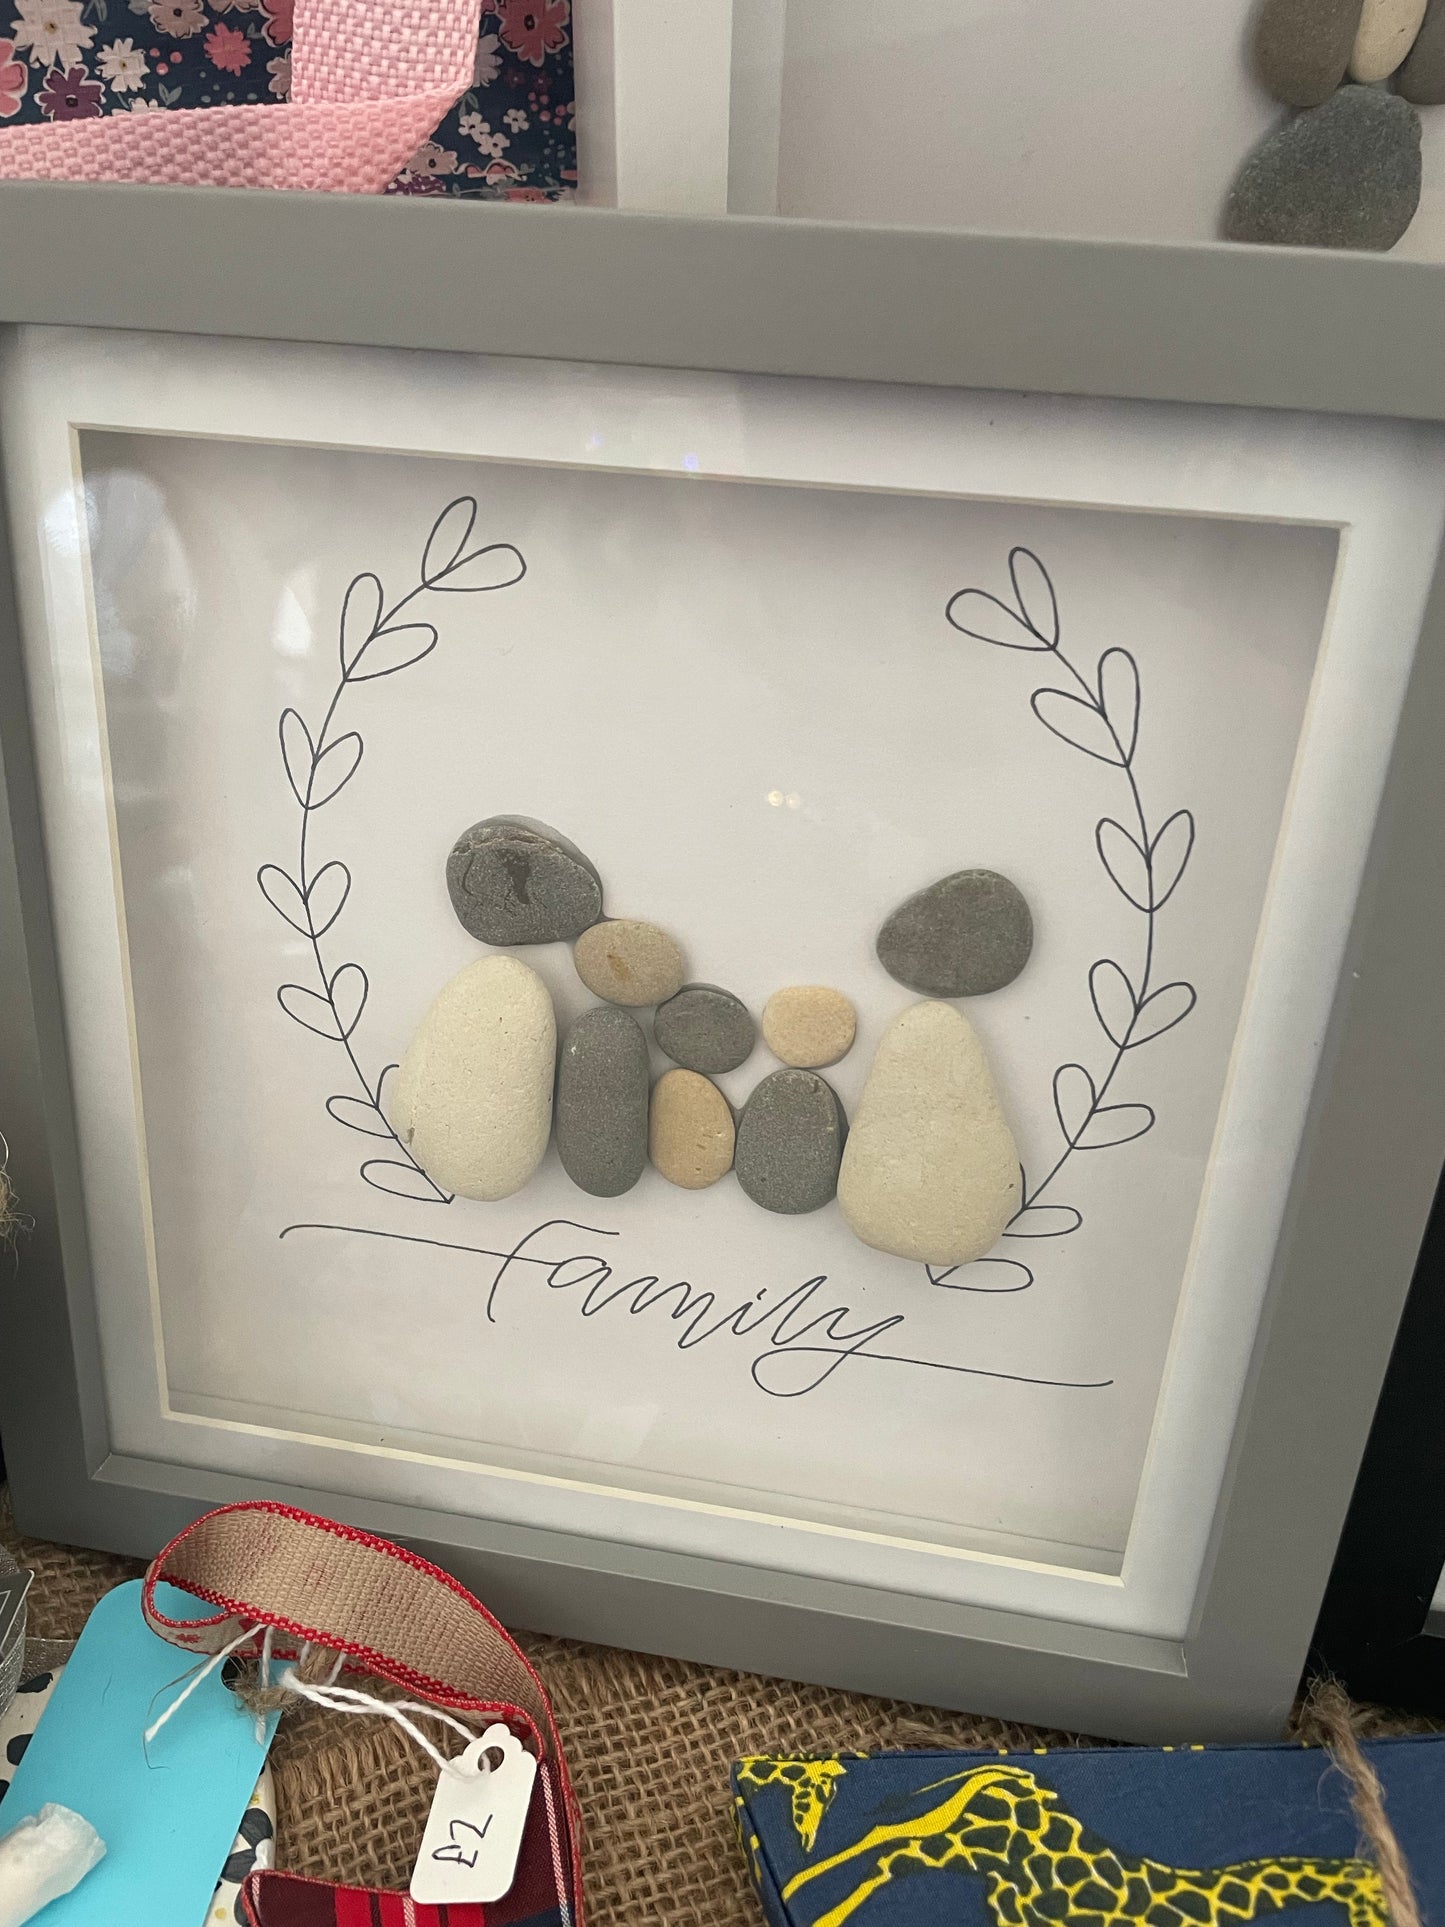 Pebble art box frame. Family of 5